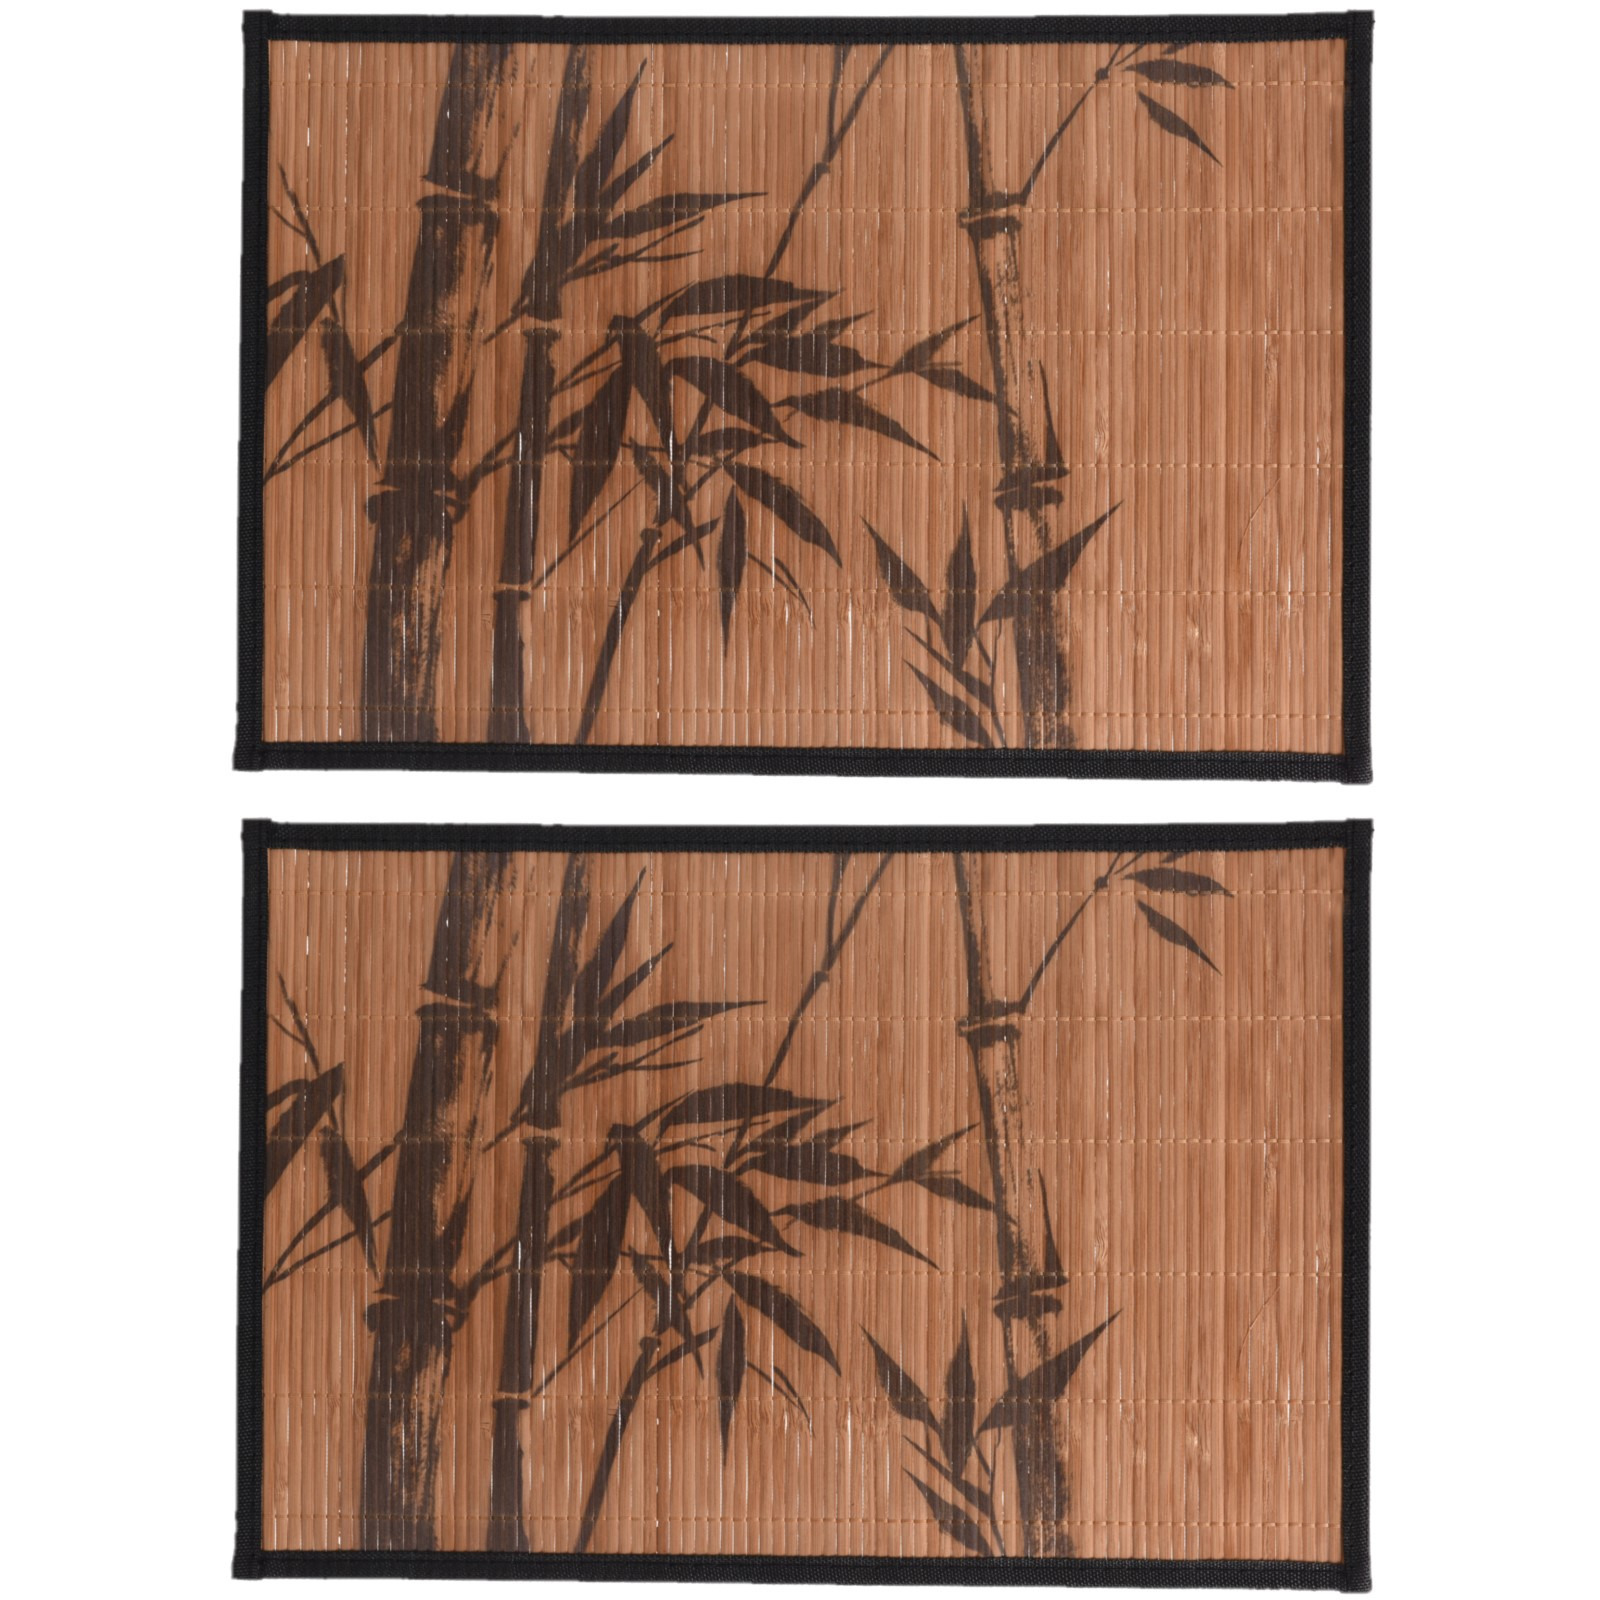 Merkloos 4x stuks rechthoekige placemats 30 x 45 cm bamboe bruin met zwarte bamboe print 1 -